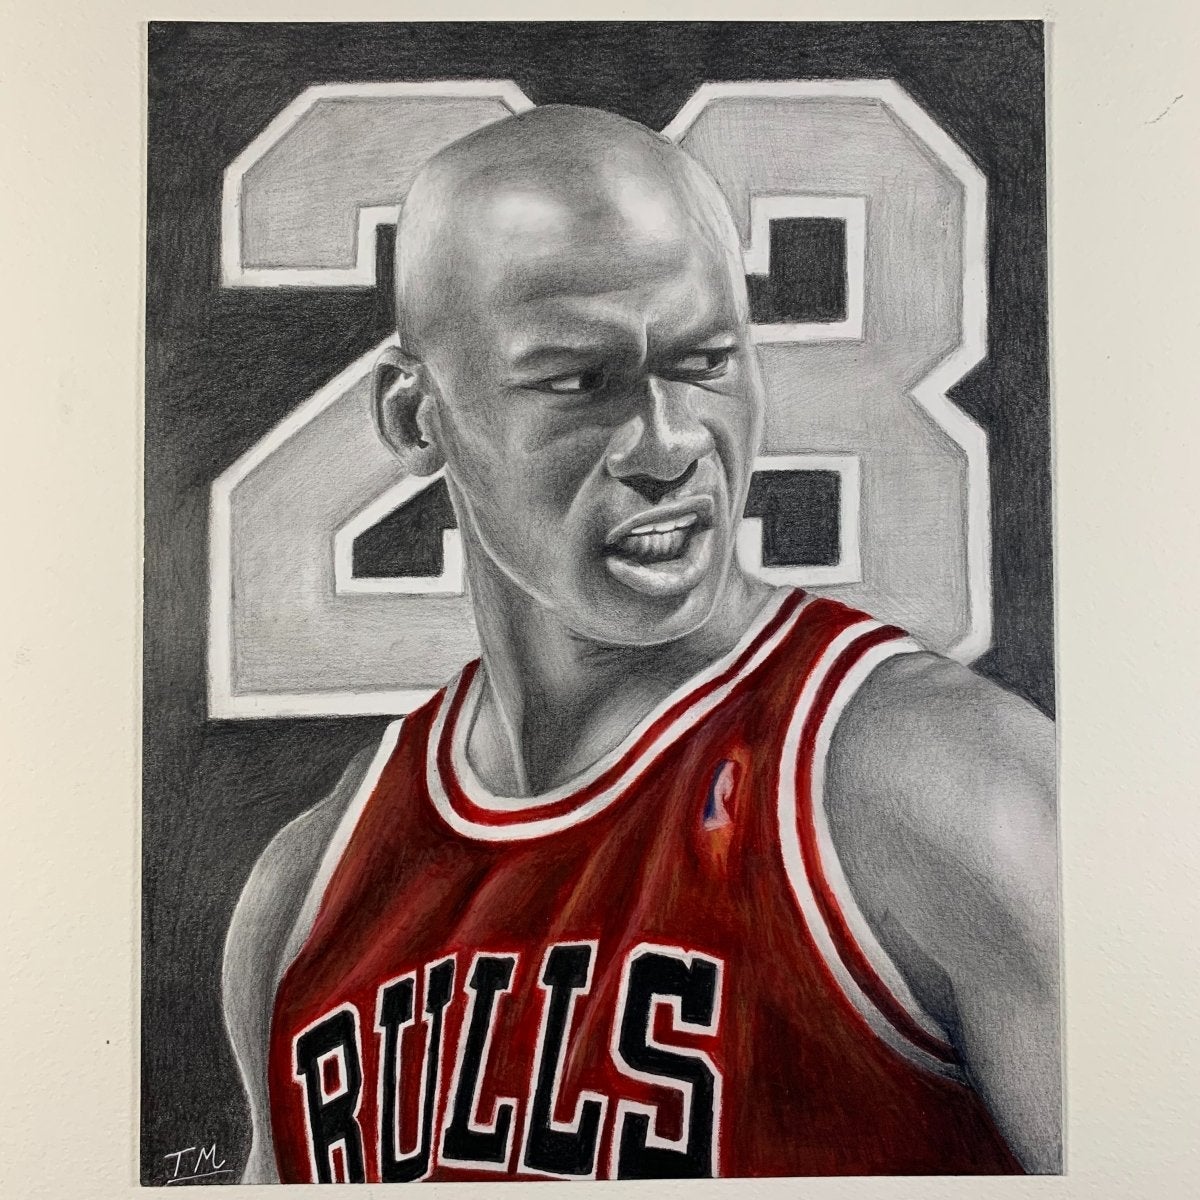 Michael Jordan By Geereezy - Drawings Of Michael Jordan - Free